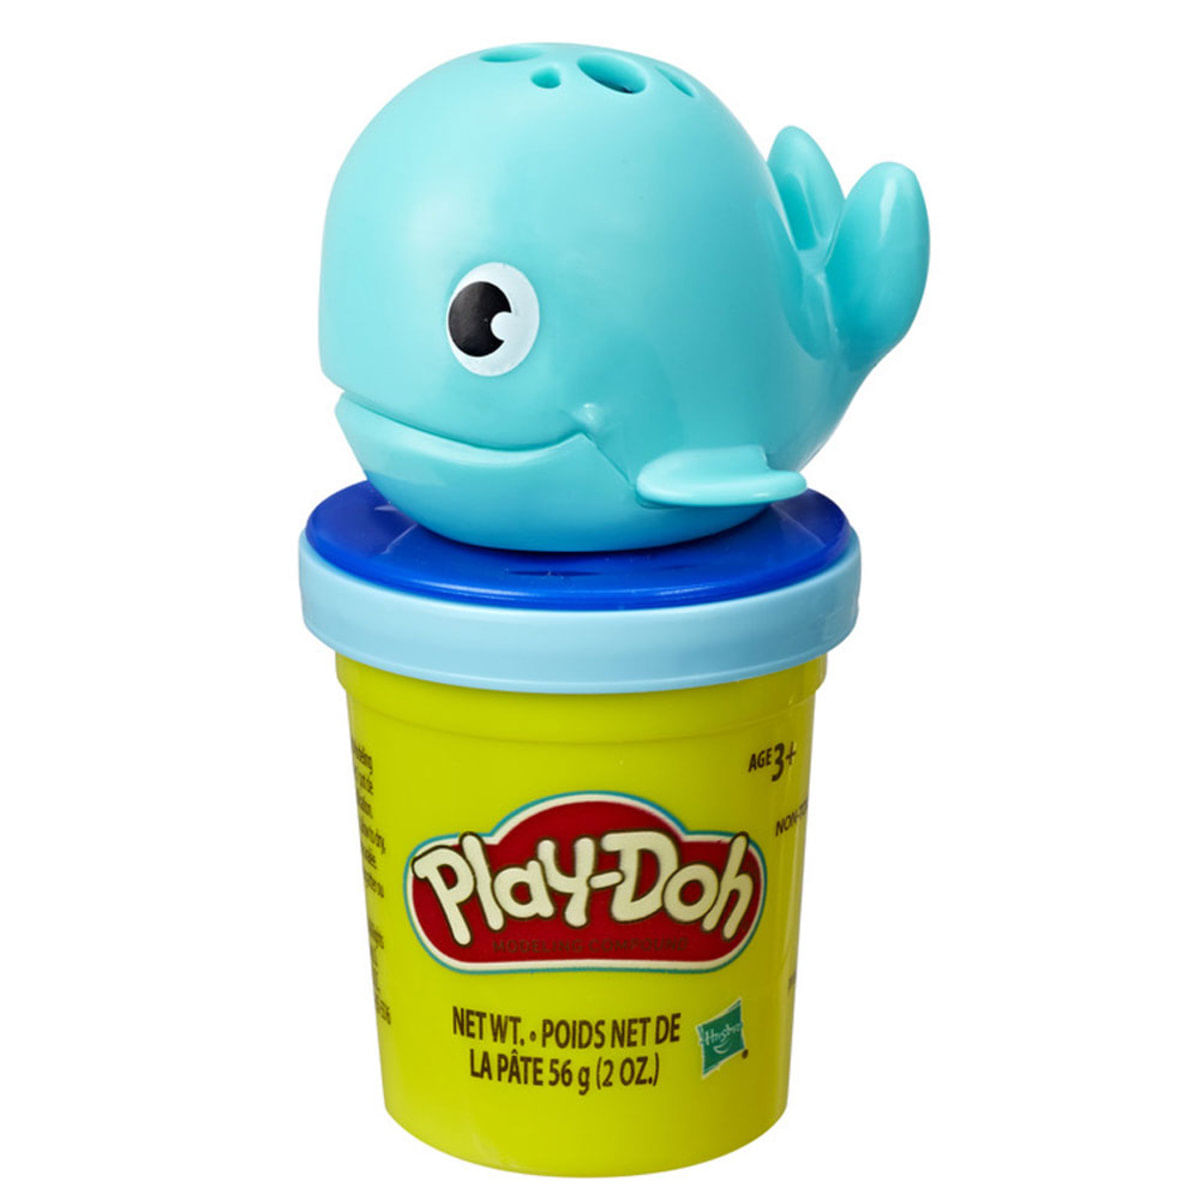 Play-Doh Massa Modelar Pote Com Acessórios